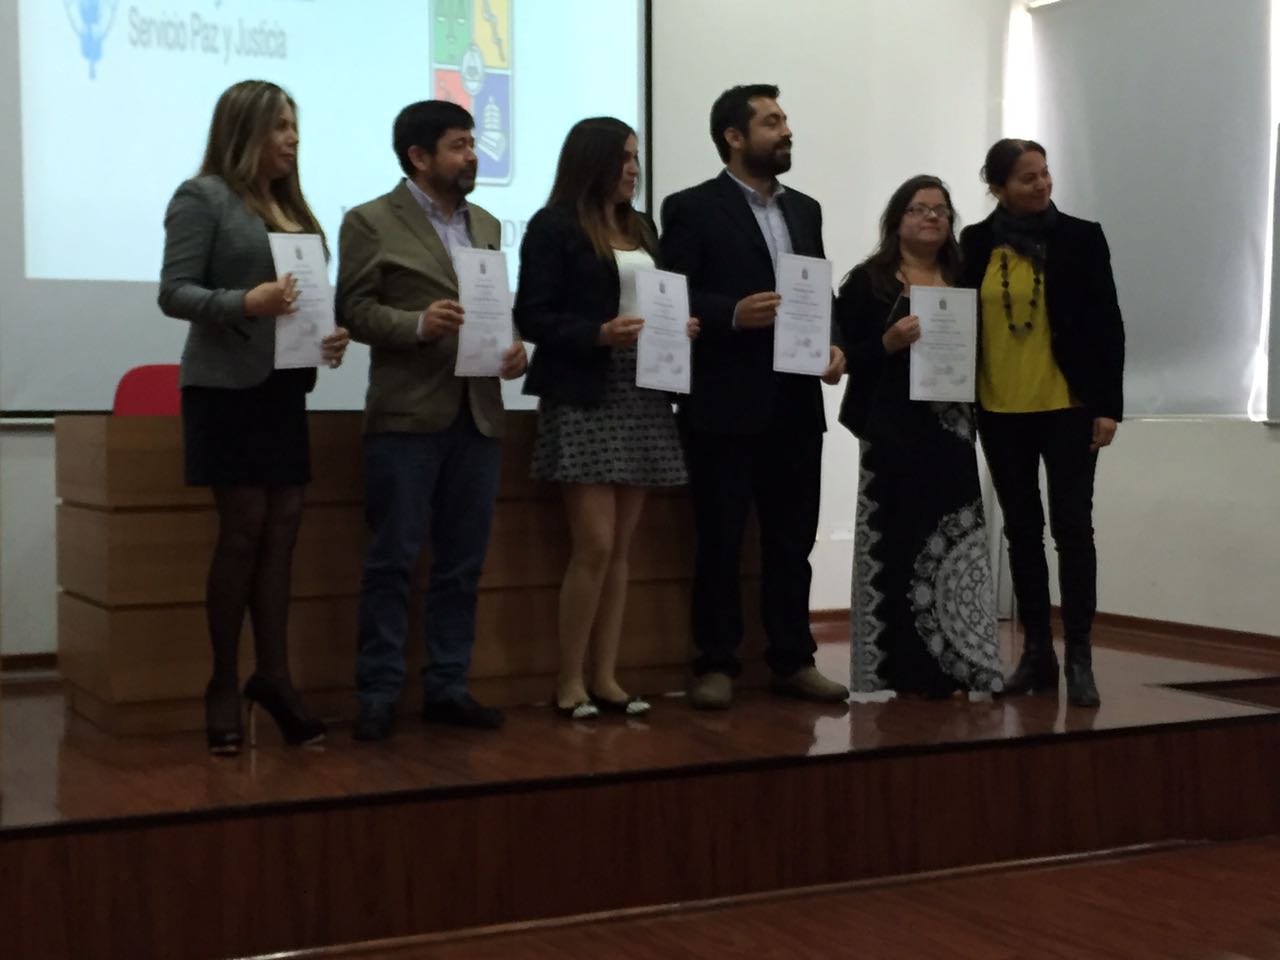 SERPAJ Coquimbo finaliza diplomado “Intervenciones actualizadas con adolescentes infractores de la ley penal”